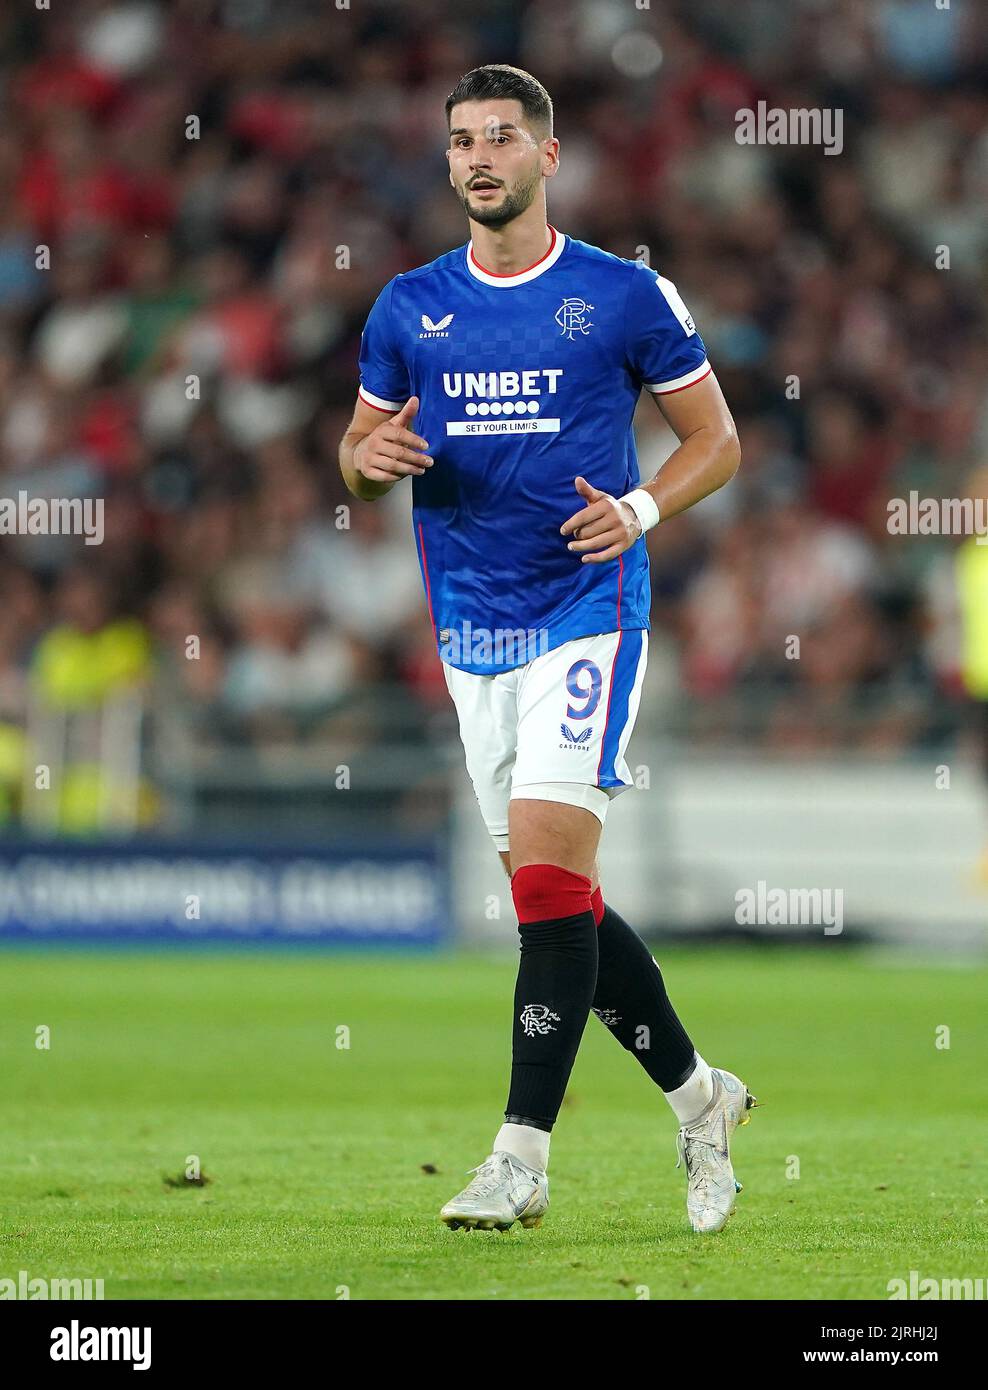 Antonio-Mirko Colak de los Rangers durante el partido de clasificación de la UEFA Champions League en el PSV Stadion, Eindhoven. Fecha de la foto: Miércoles 24 de agosto de 2022. Foto de stock